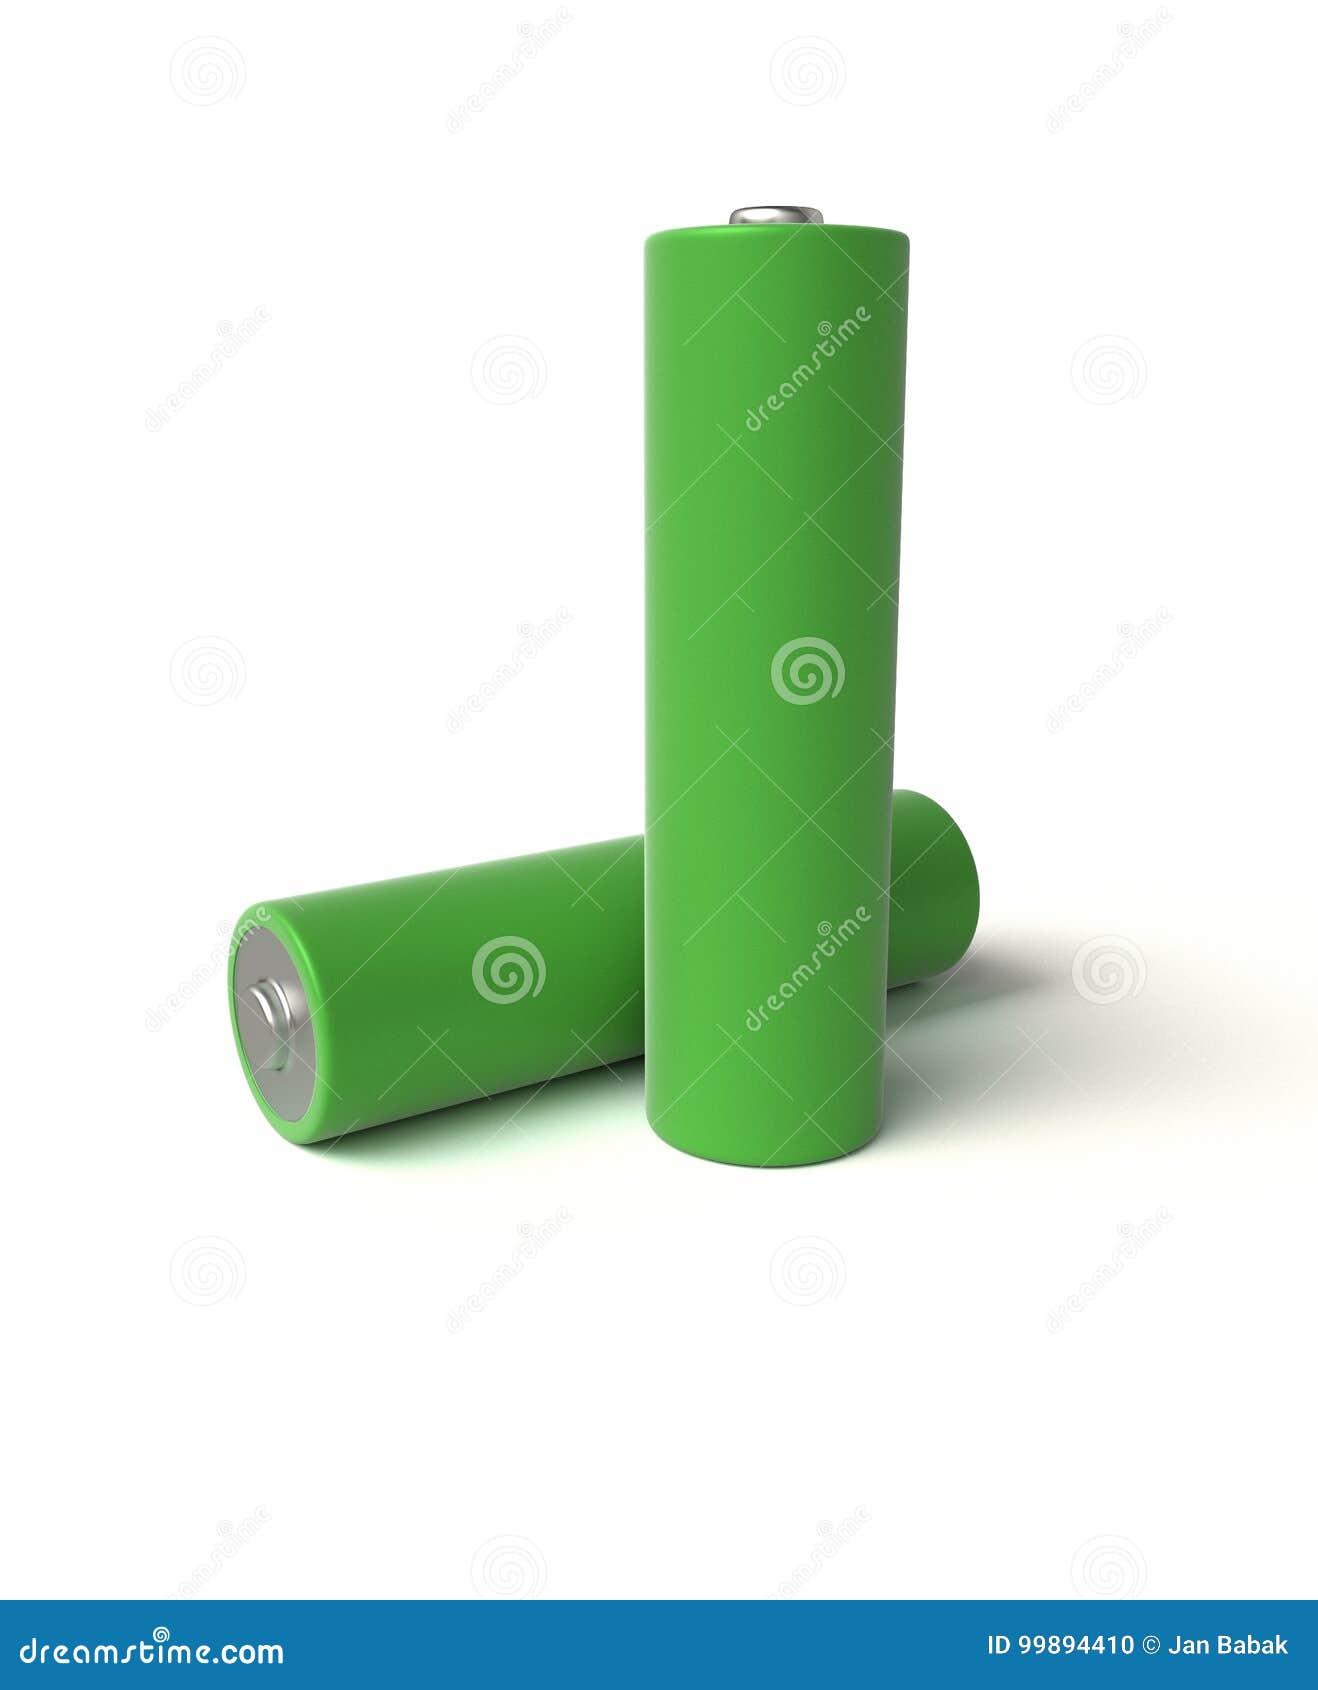 Alkalische Batterie. 3D, die realistisch sind, übertragen von grüner alkalischer Batterie AA auf einem weißen Hintergrund, lokalisiert, mit Schatten